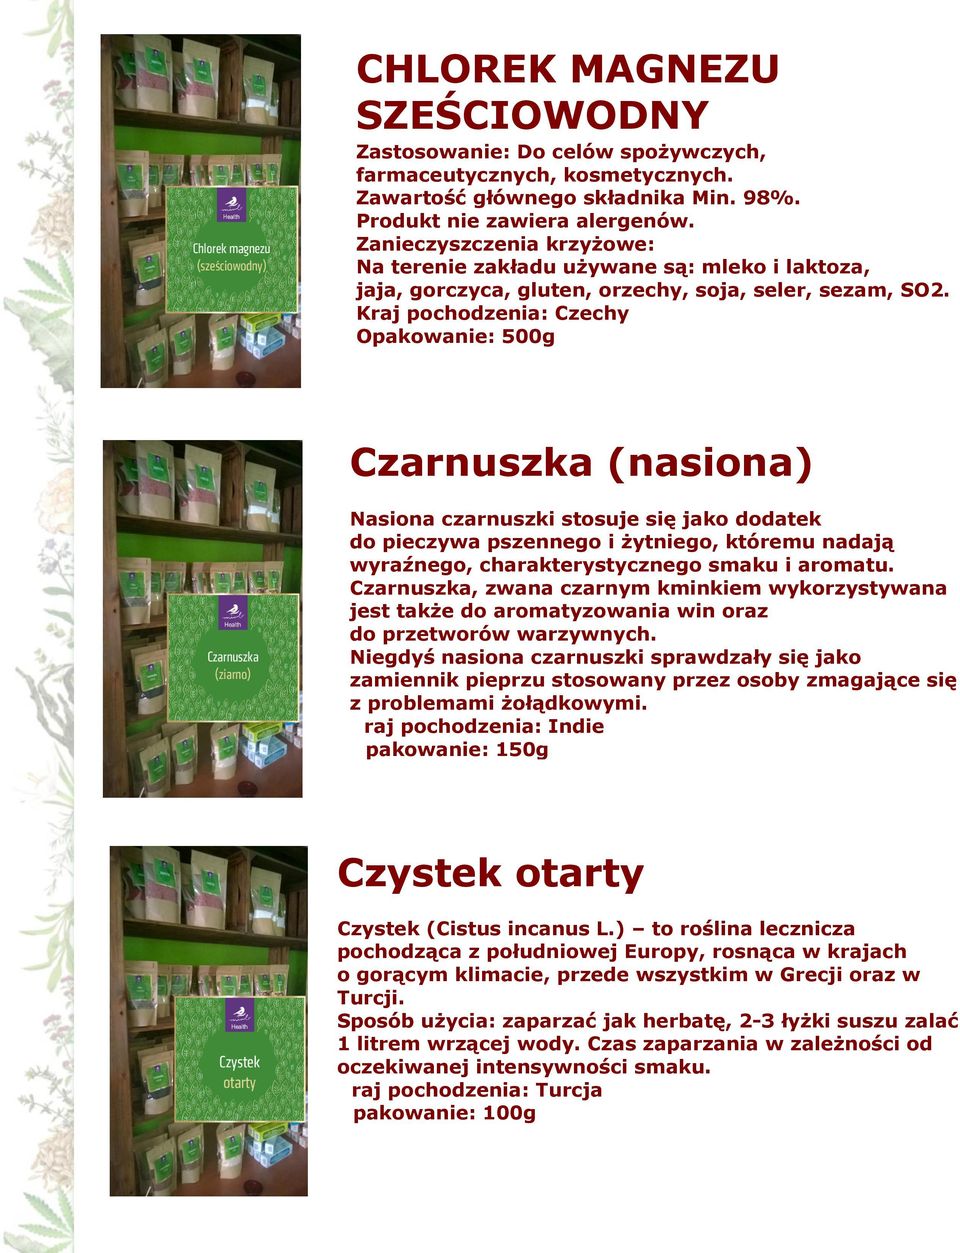 Kraj pochodzenia: Czechy Opakowanie: 500g Czarnuszka (nasiona) Nasiona czarnuszki stosuje się jako dodatek do pieczywa pszennego i żytniego, któremu nadają wyraźnego, charakterystycznego smaku i